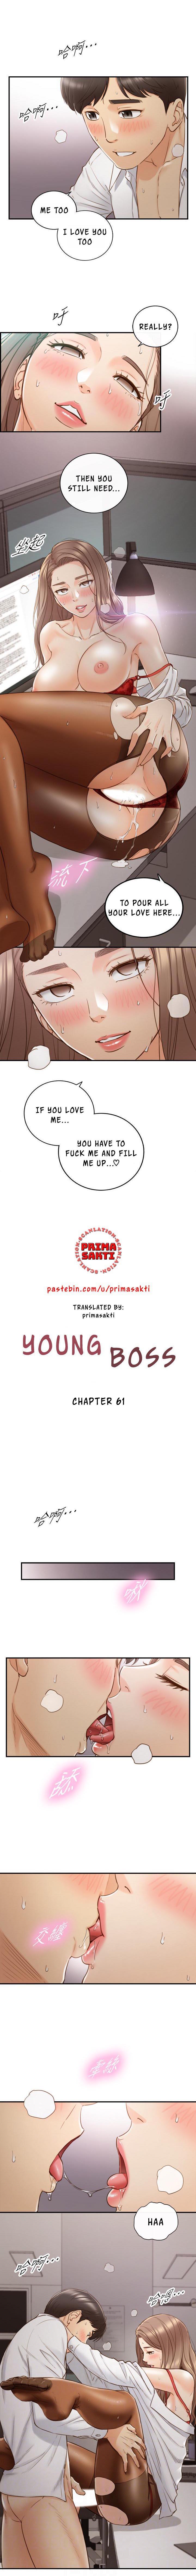 Young Boss Manhwa 01-73 481